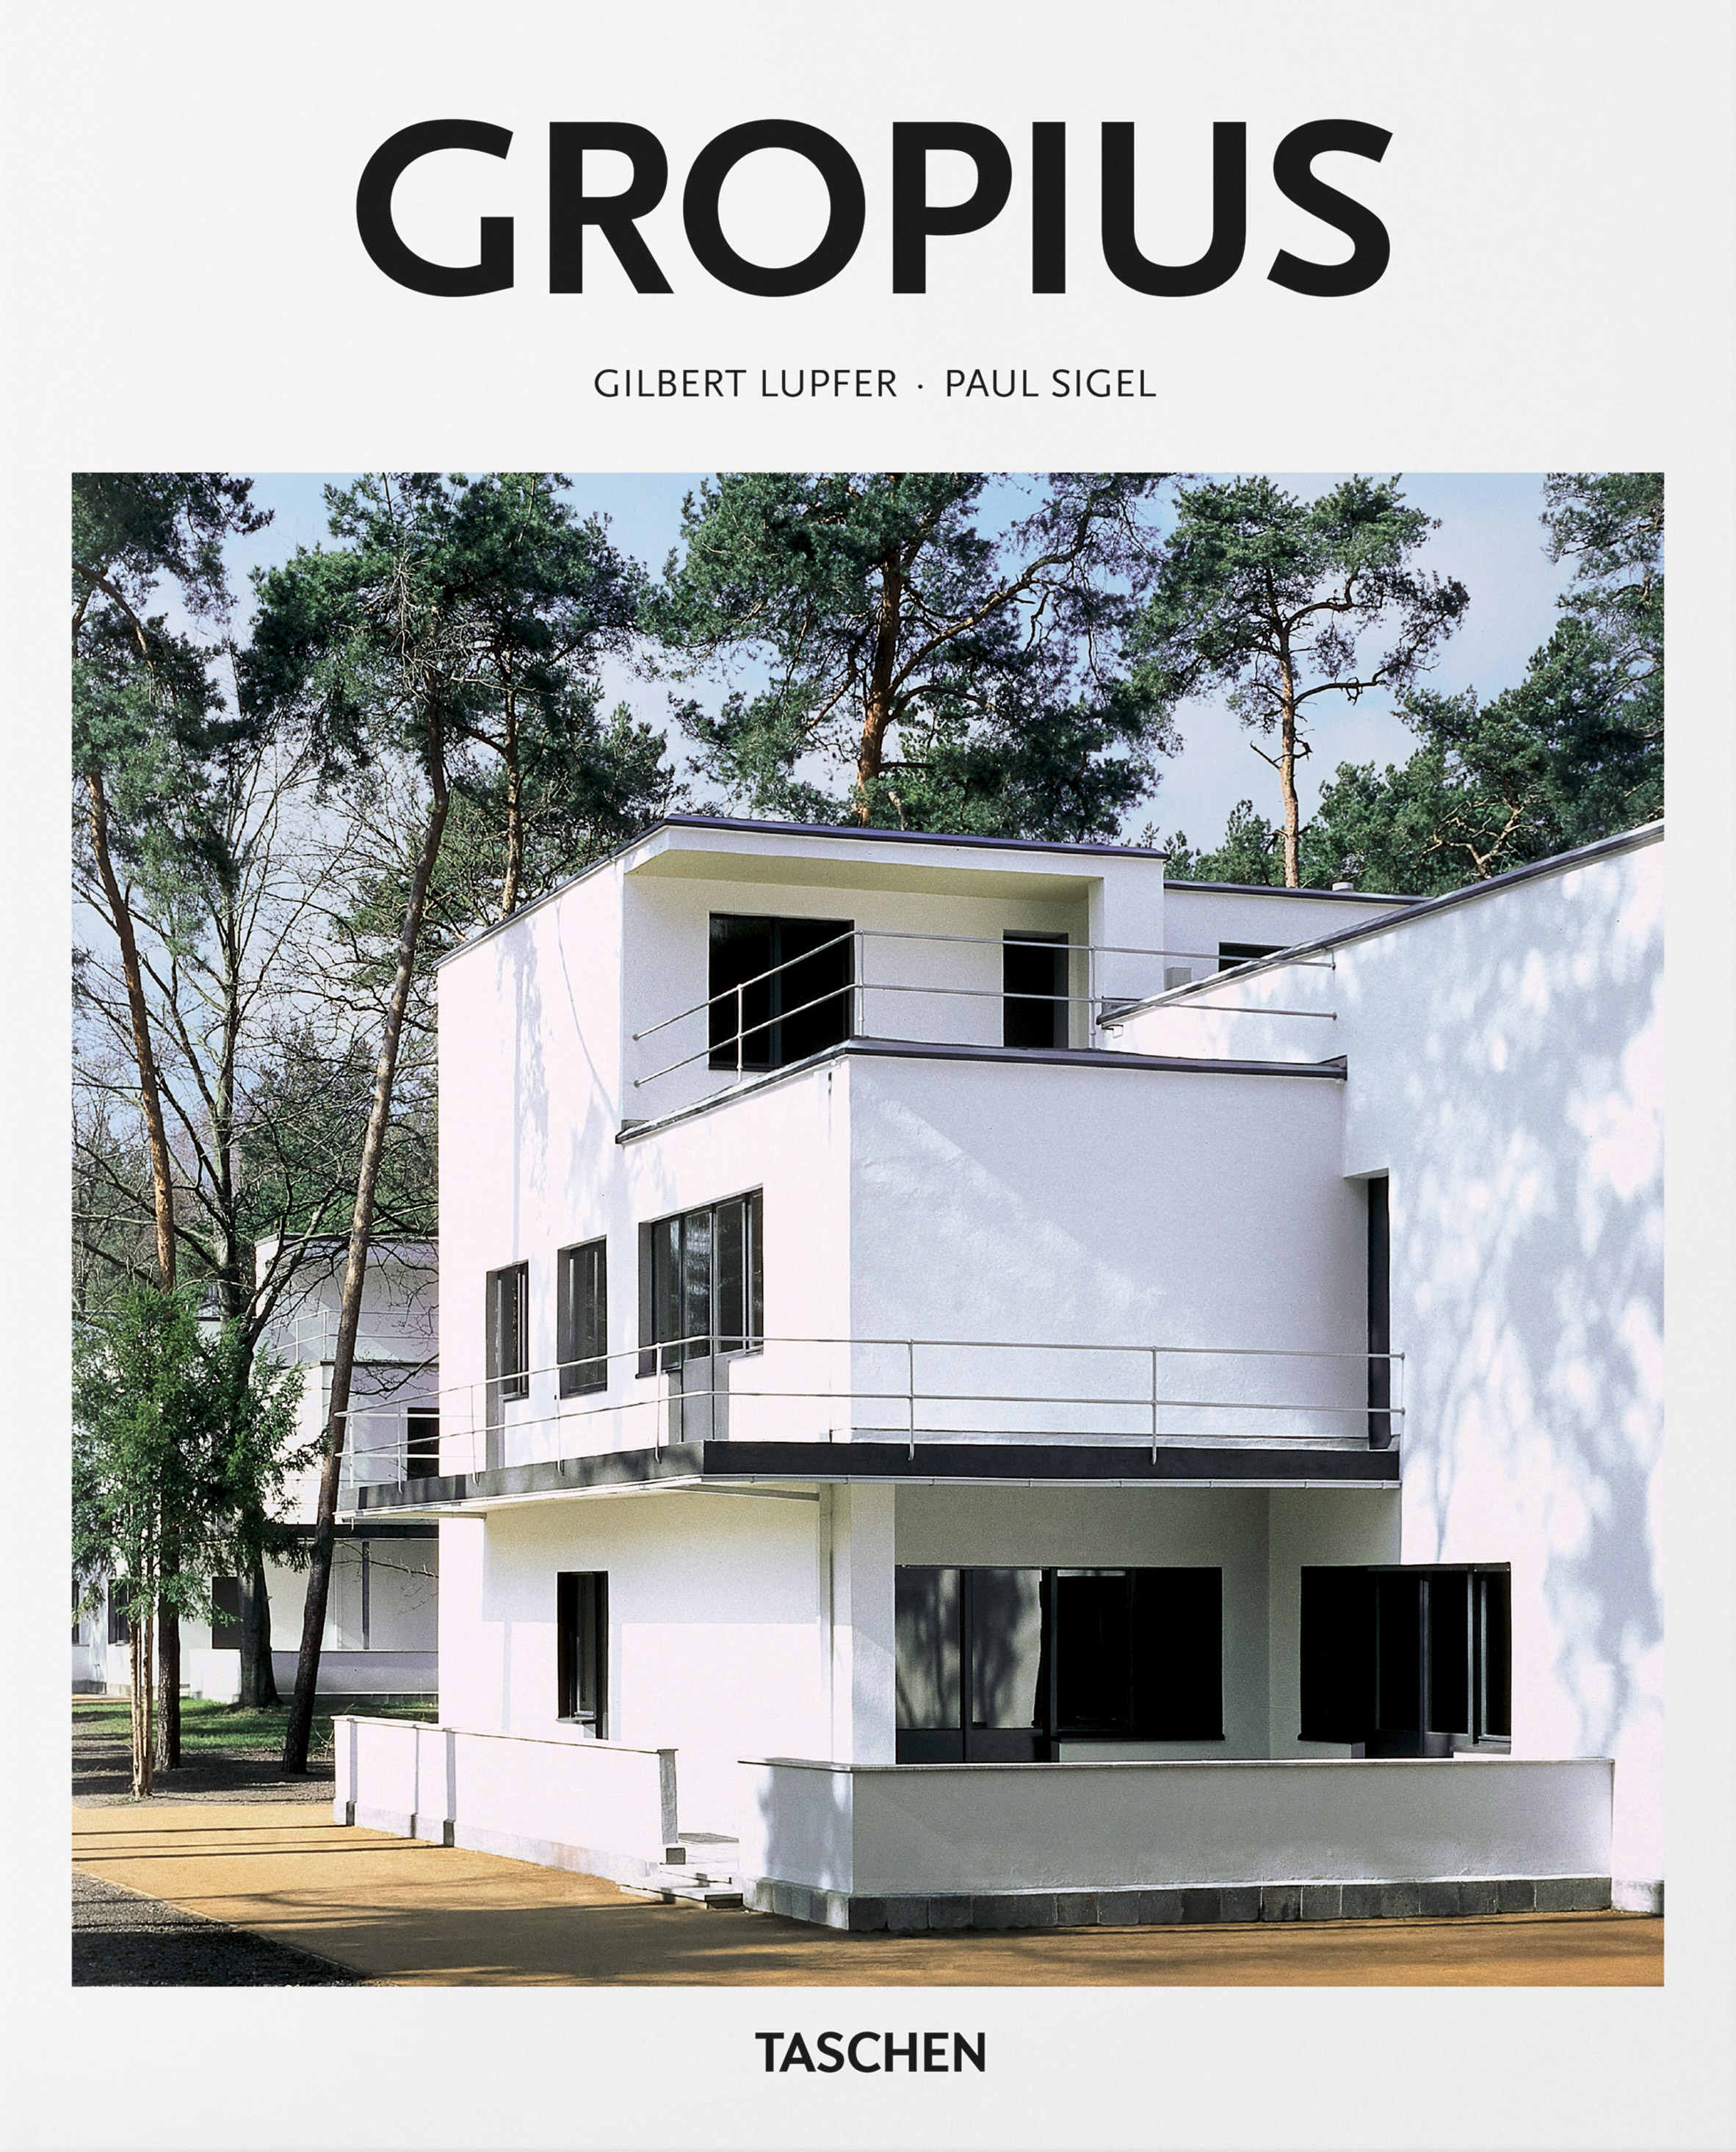 Dezeen roundups: best Bauhaus books